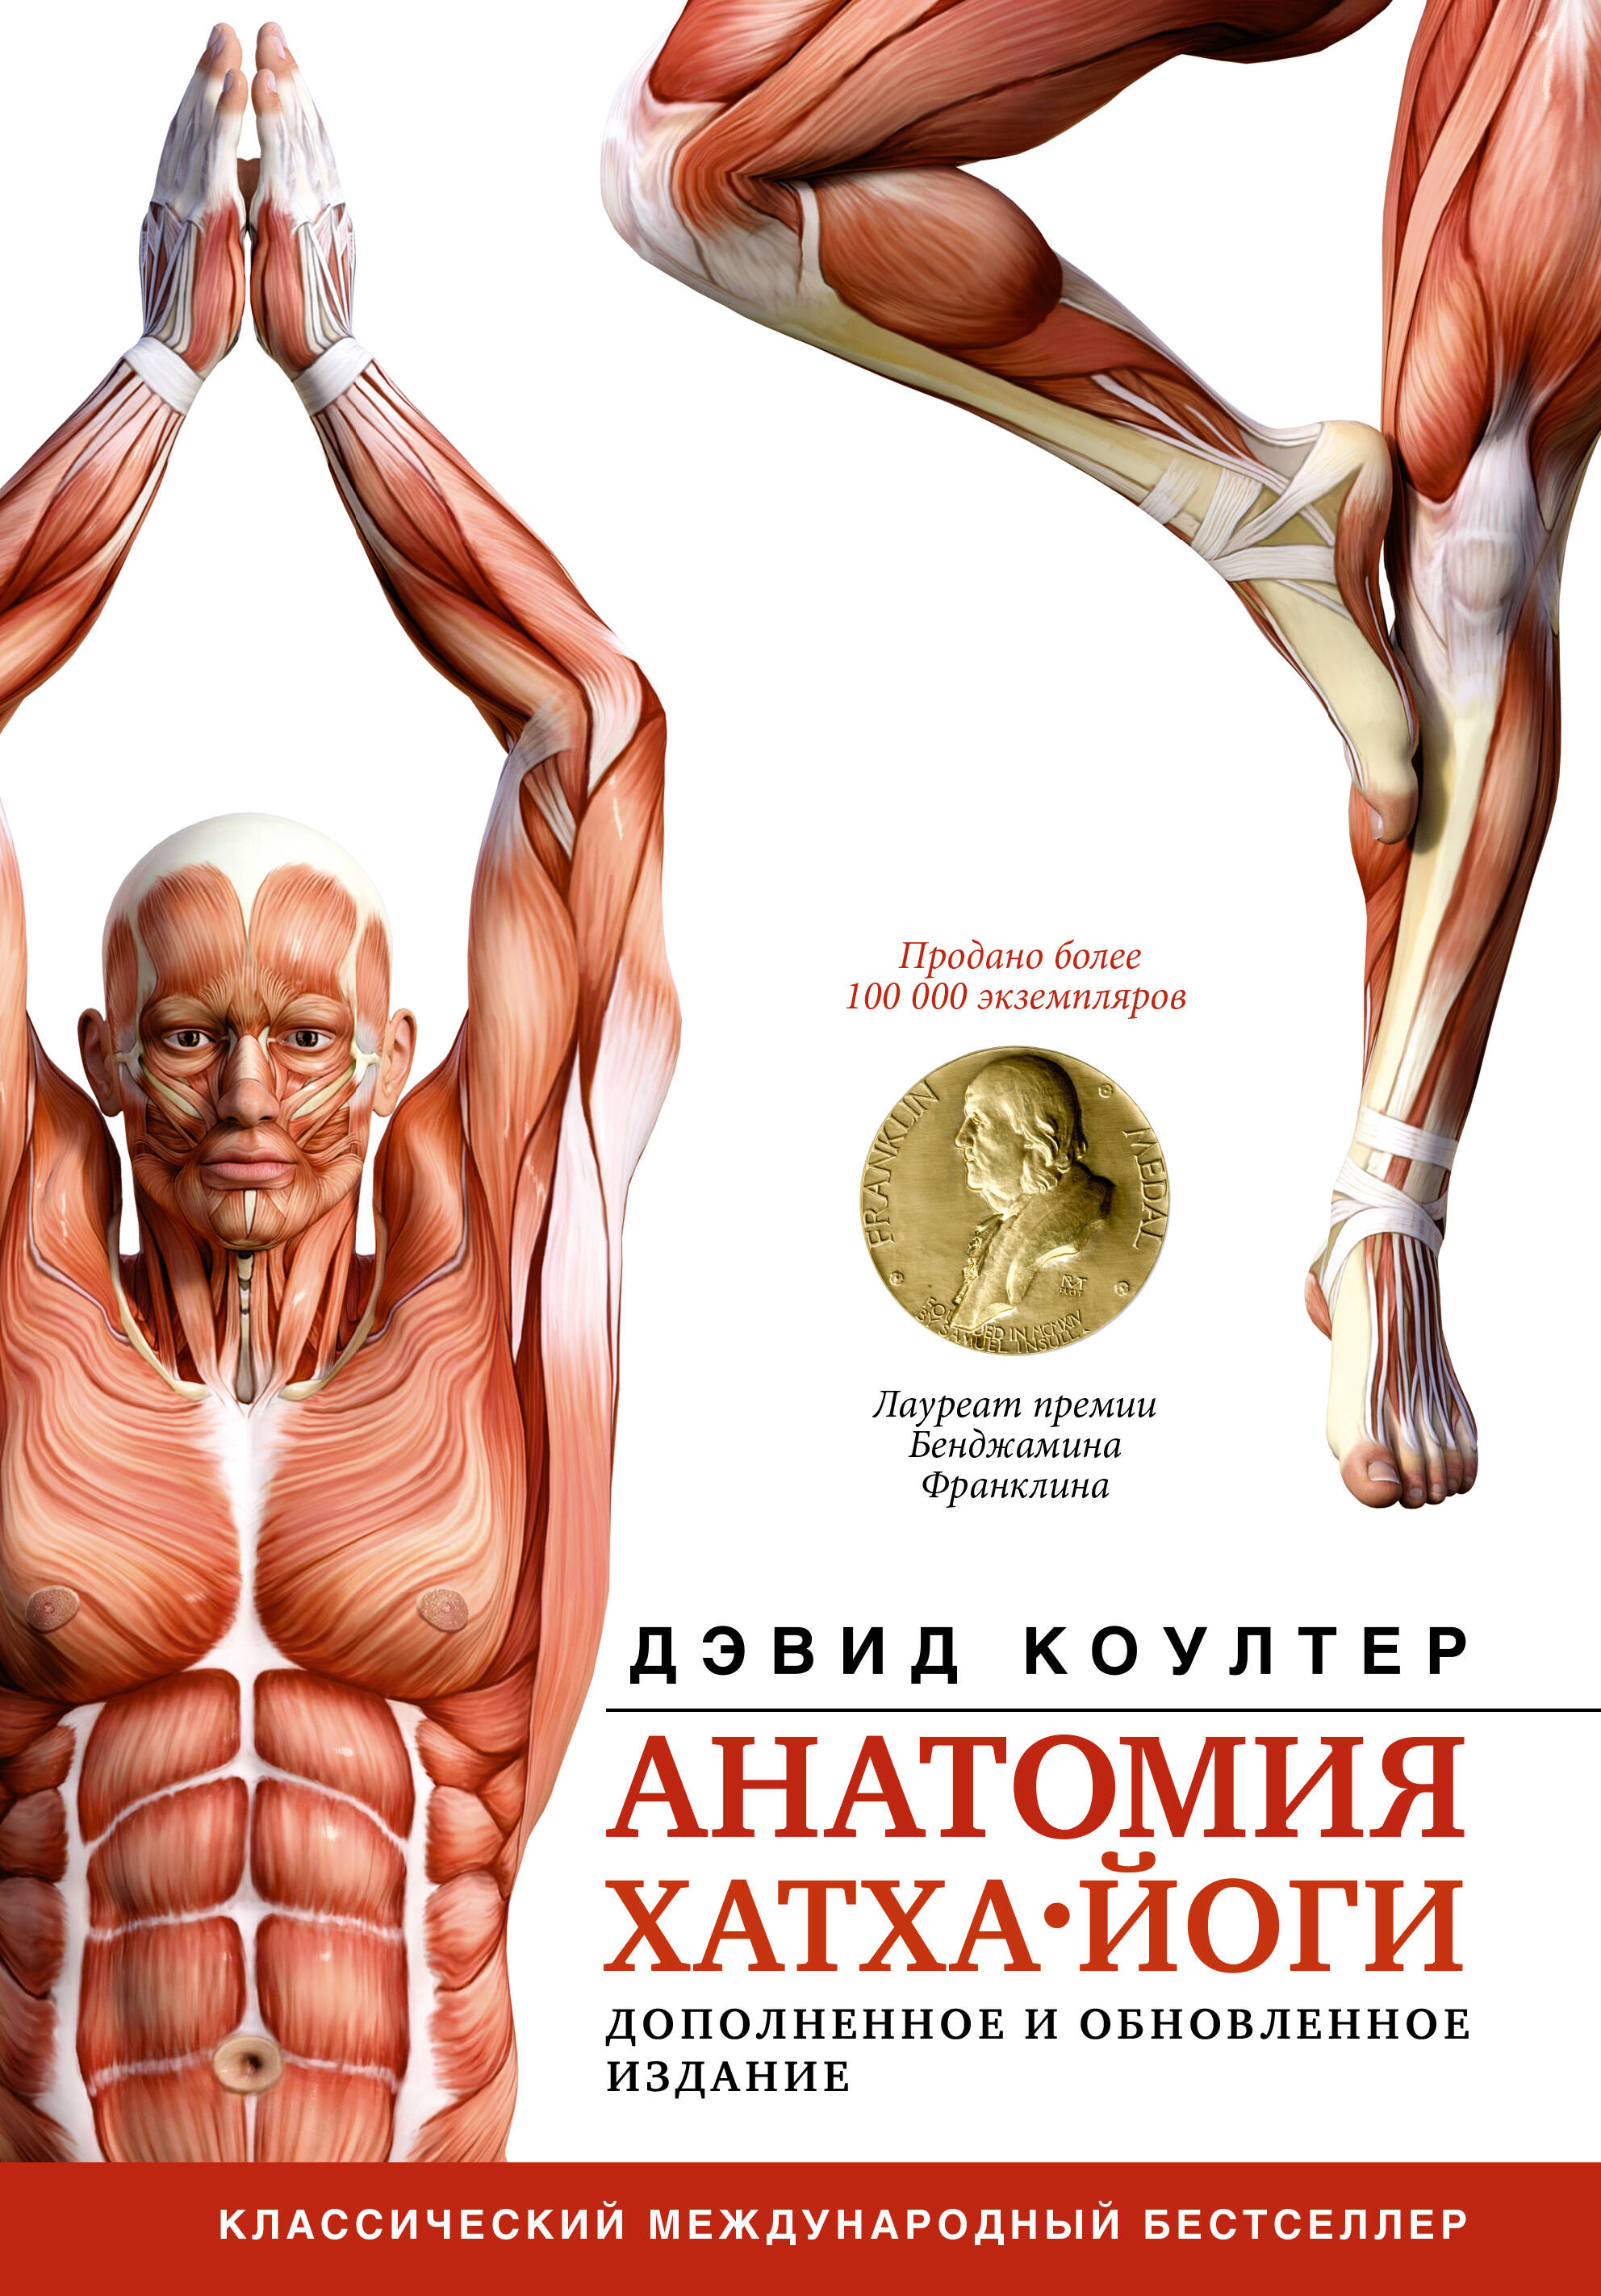 Анатомия хатха-йоги. Дополненное и обновленное издание коултер дэвид анатомия хатха йоги